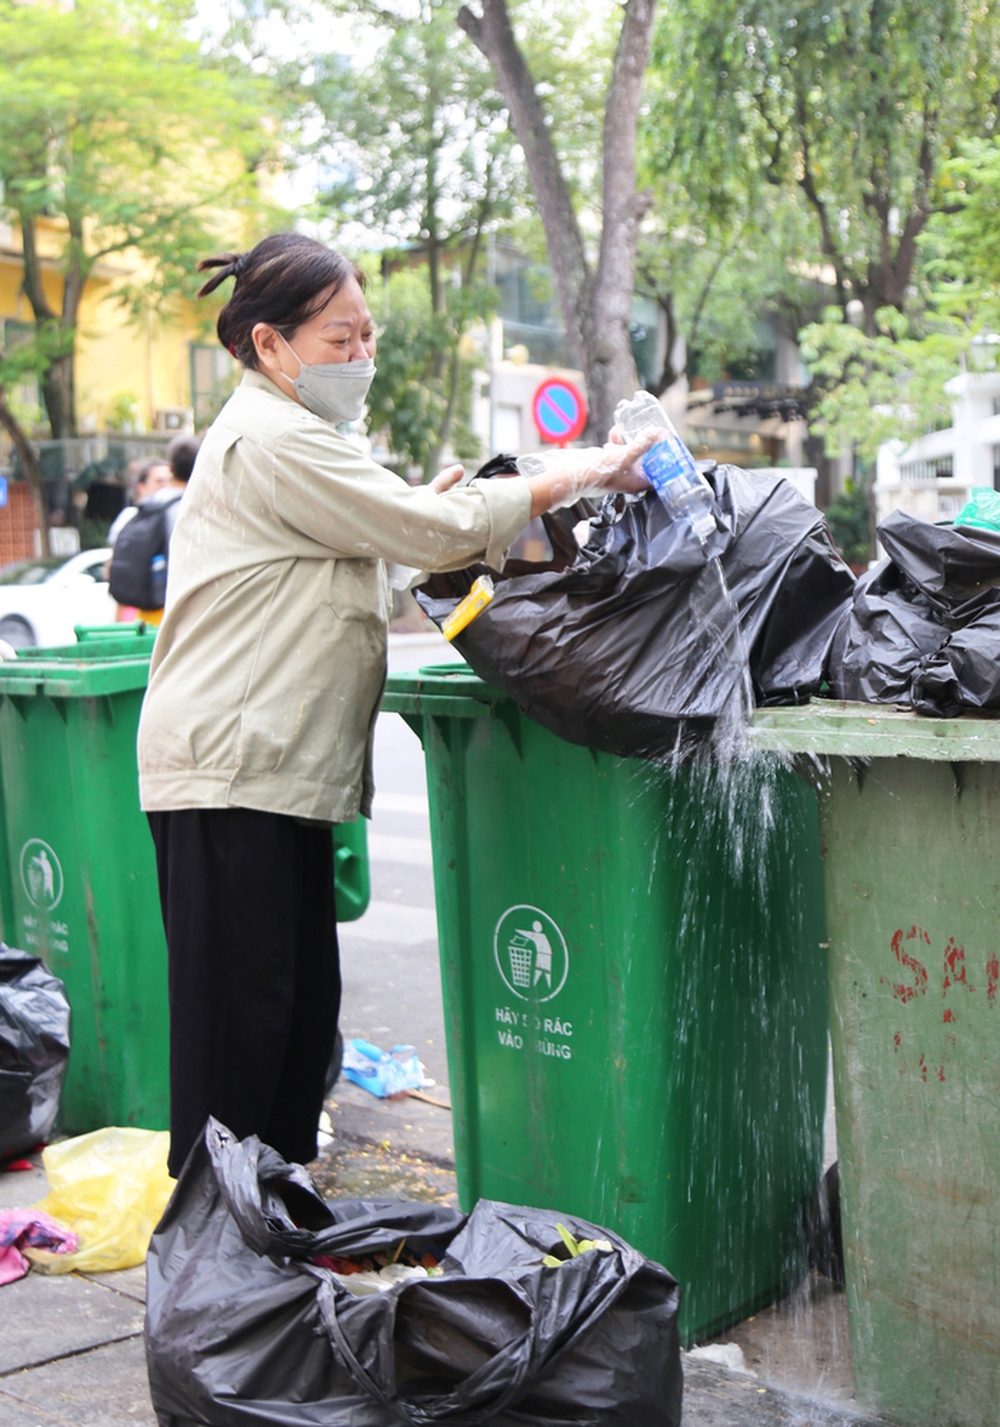  Nữ phu rác 67 tuổi ở Hà Nội: Ngày nào tôi nghỉ làm, mẹ tôi phải nhịn thuốc - Ảnh 9.